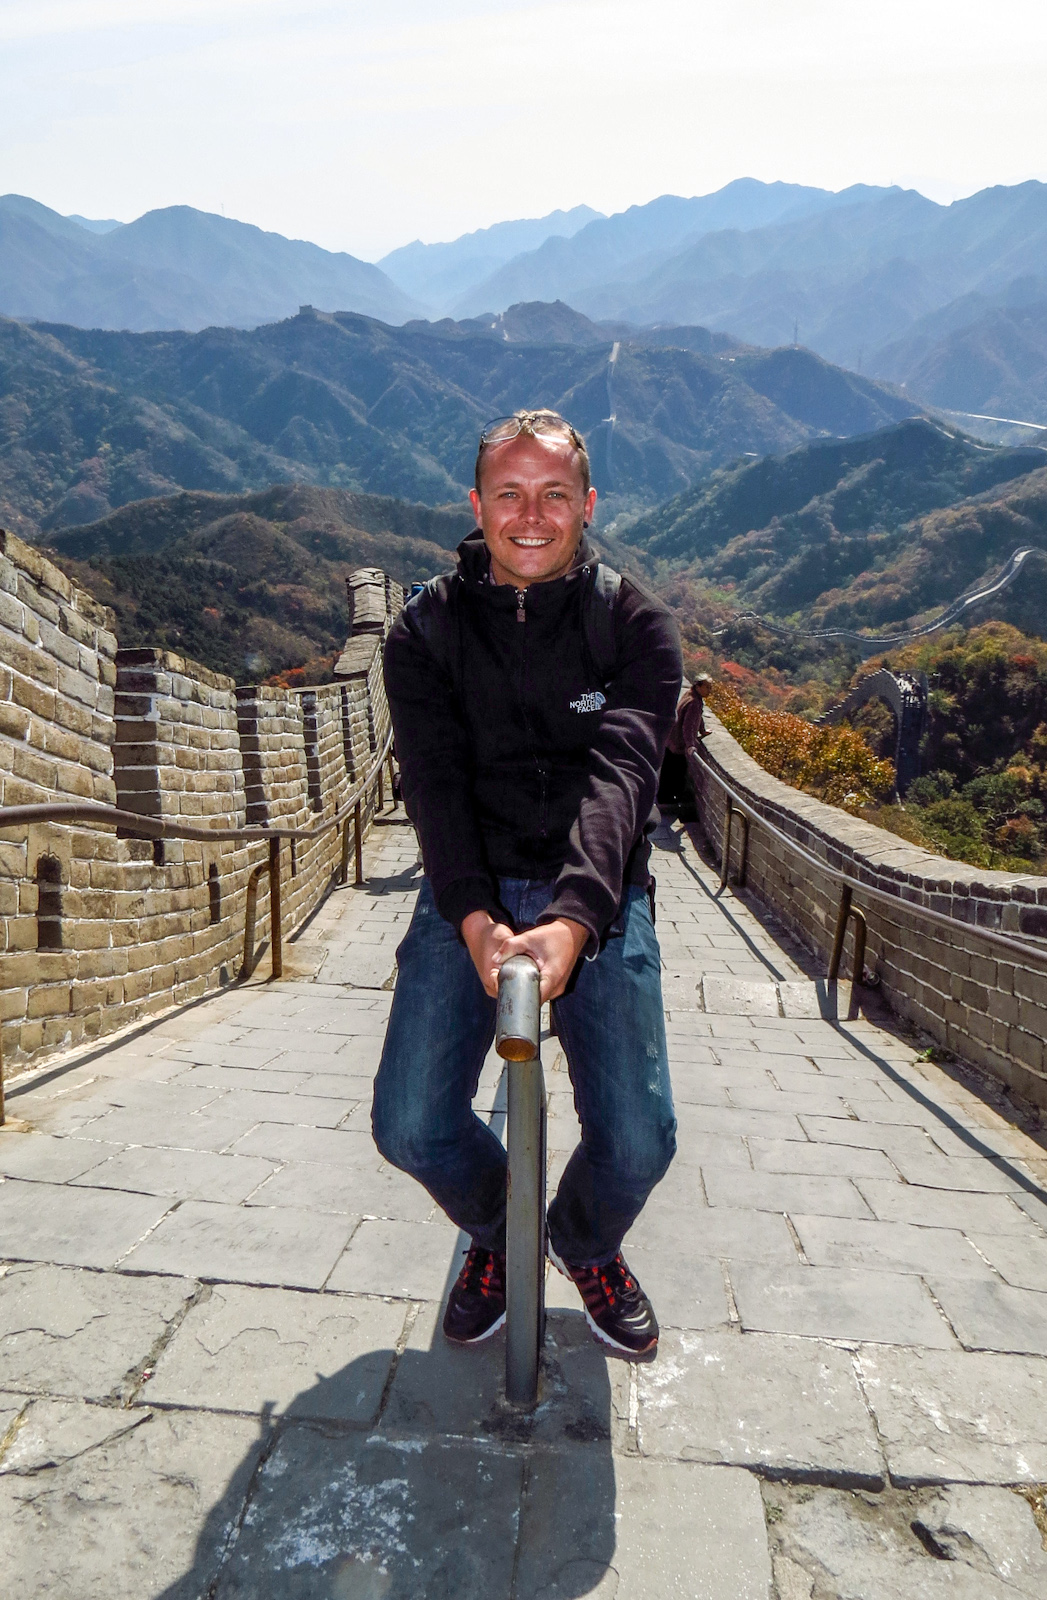 john-riding-the-great-wall-of-china-badaling